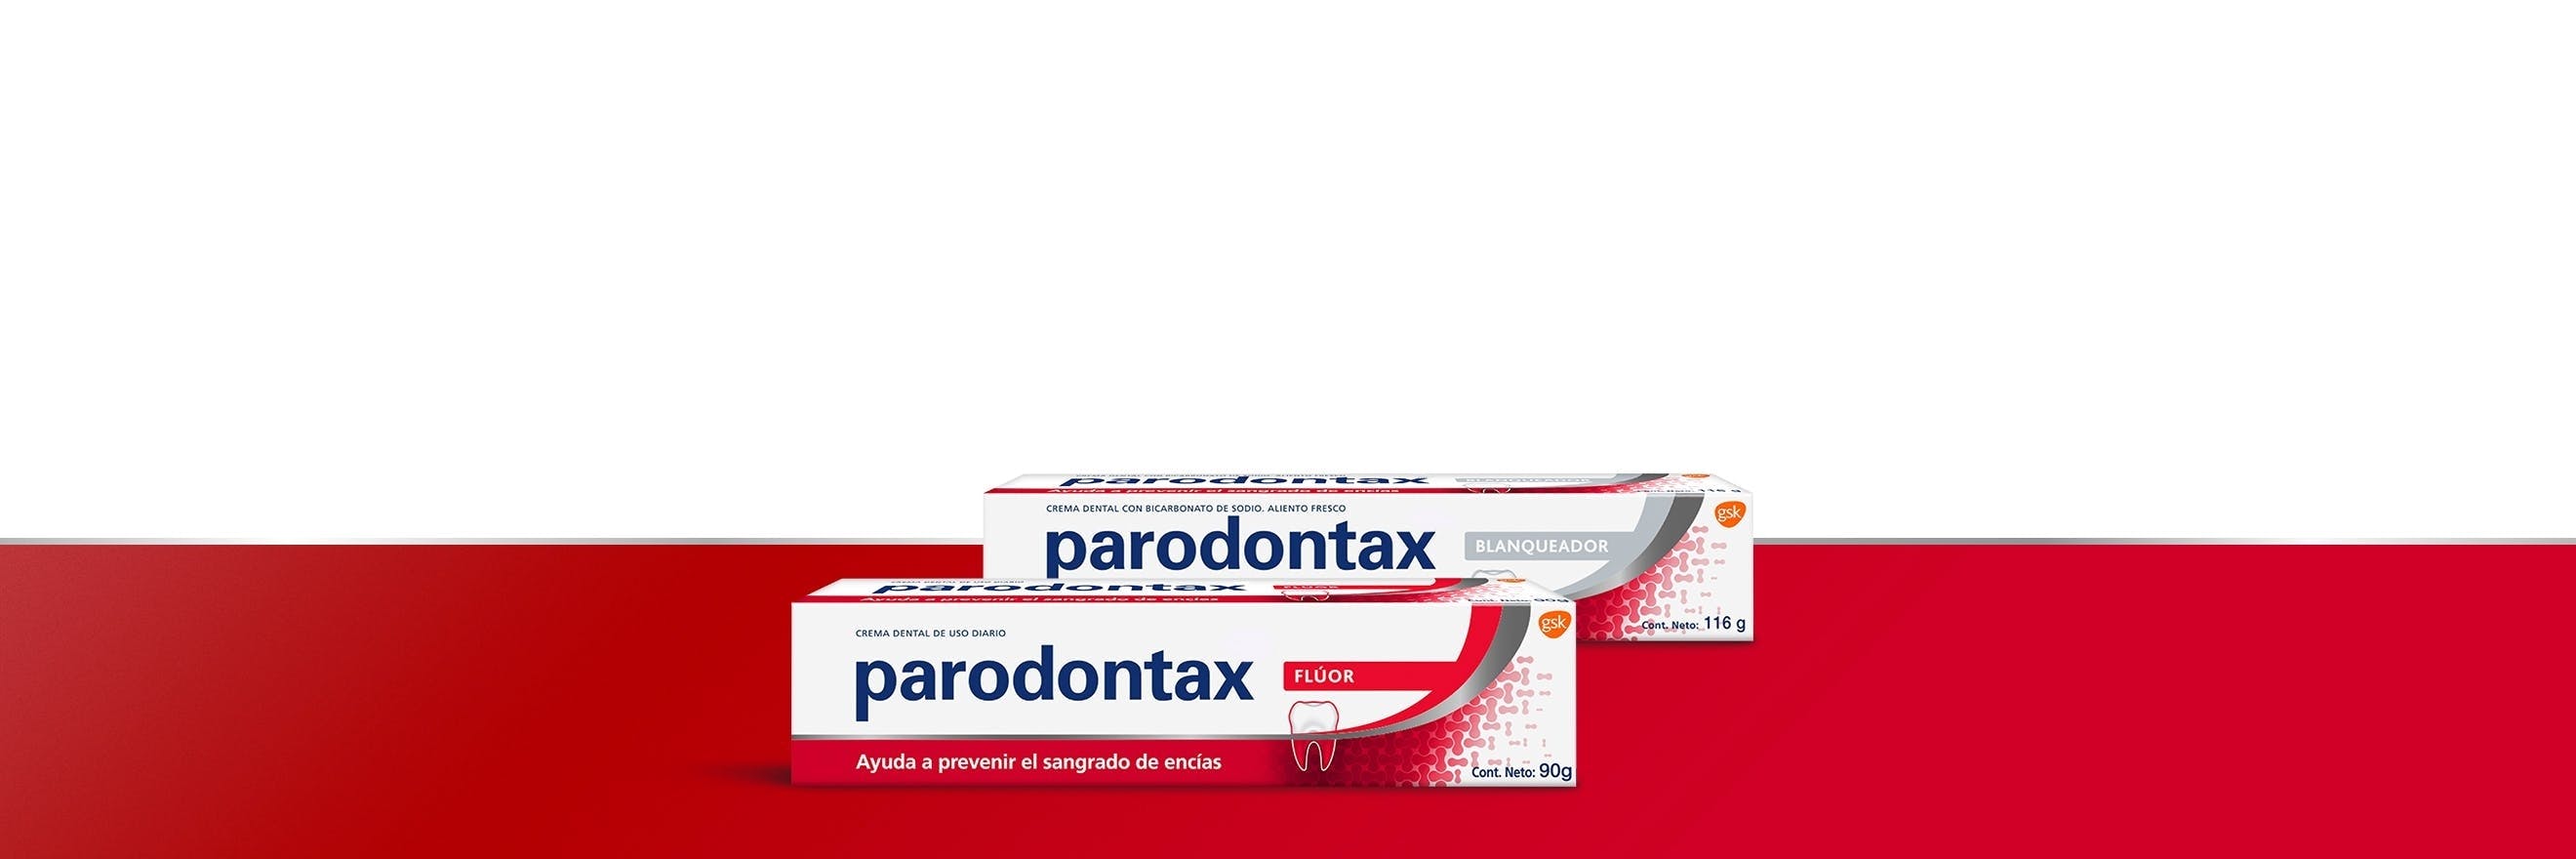 Gama de productos de uso diario parodontax